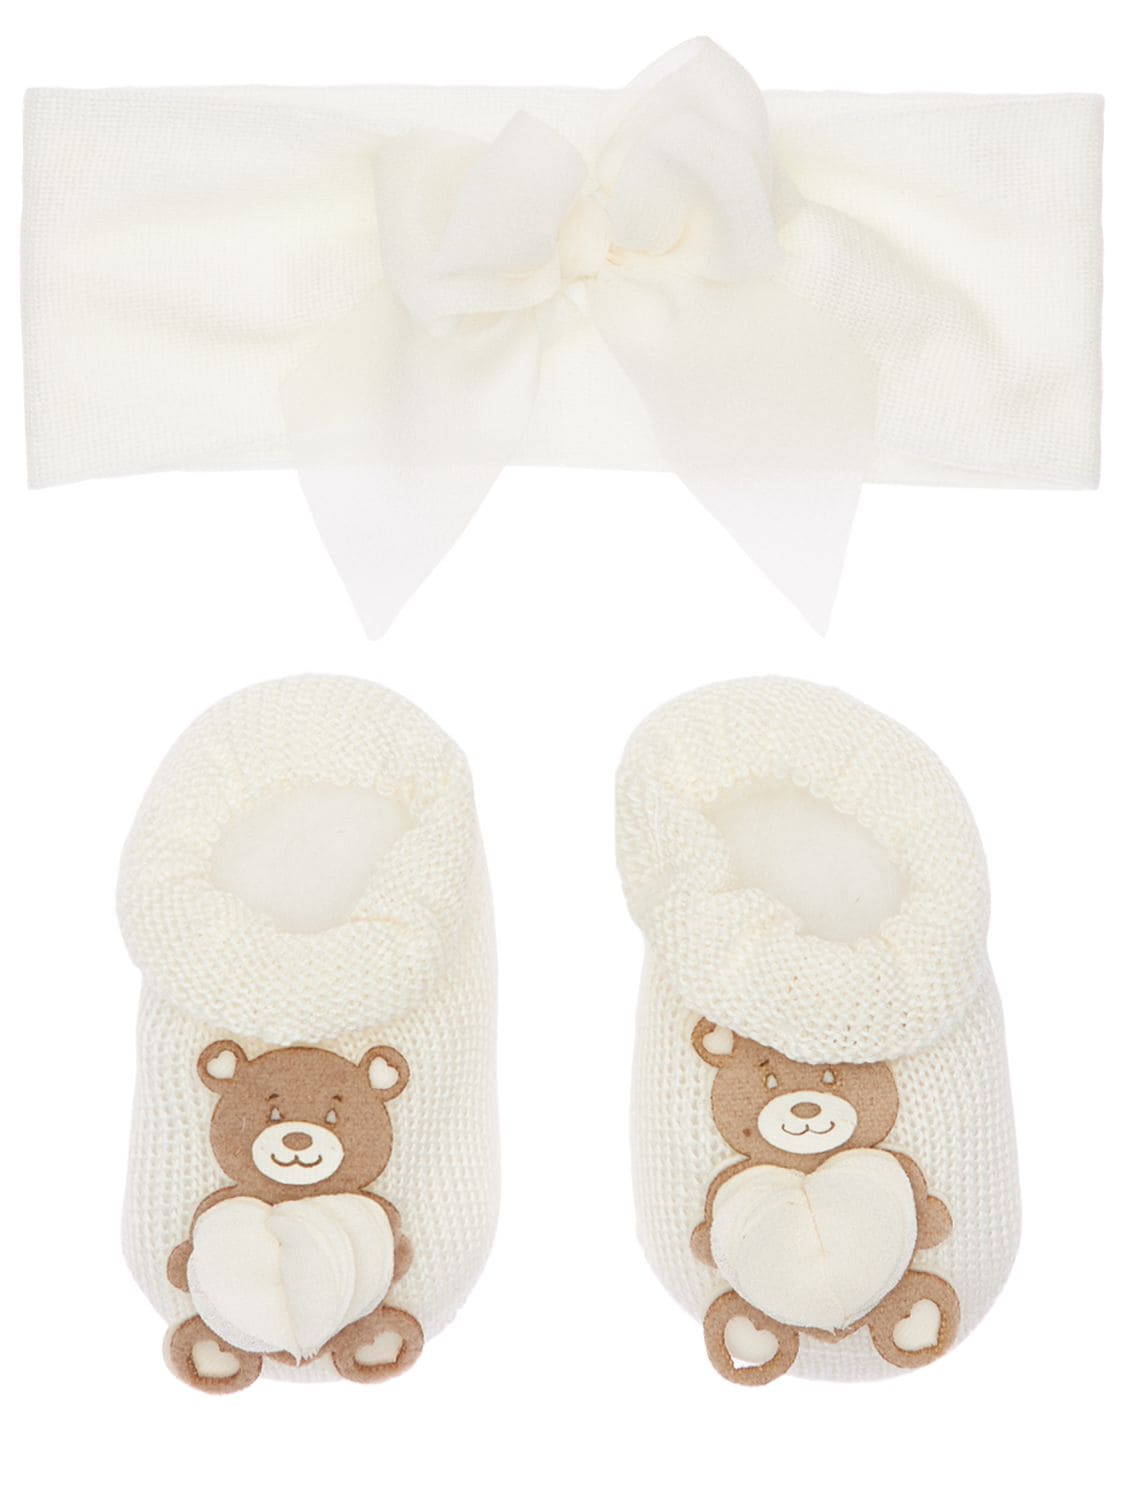 La Perla Babies' Knit Headband & Socks W/ Bear Appliqués In Off White